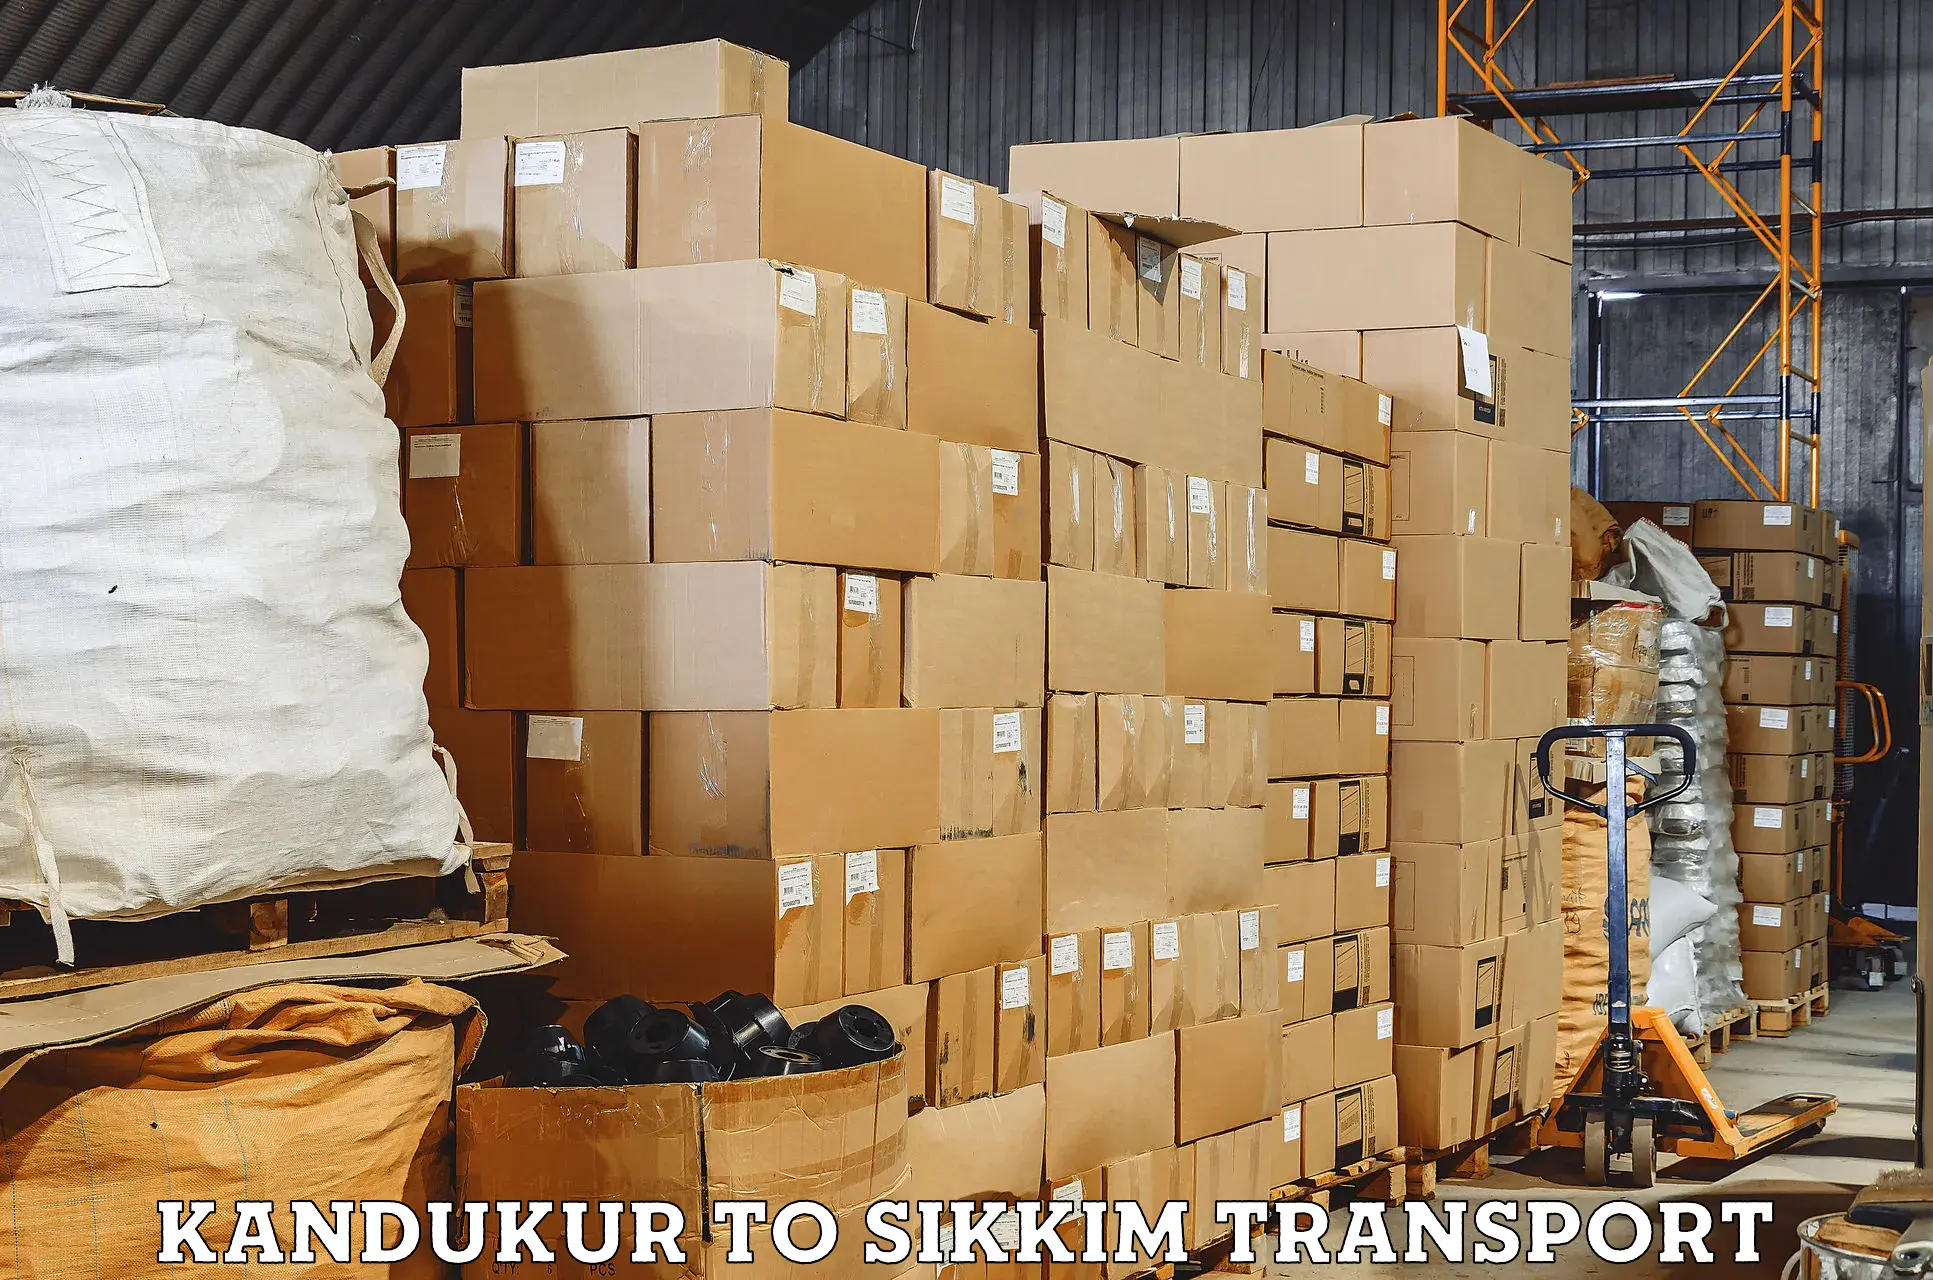 Door to door transport services Kandukur to Sikkim